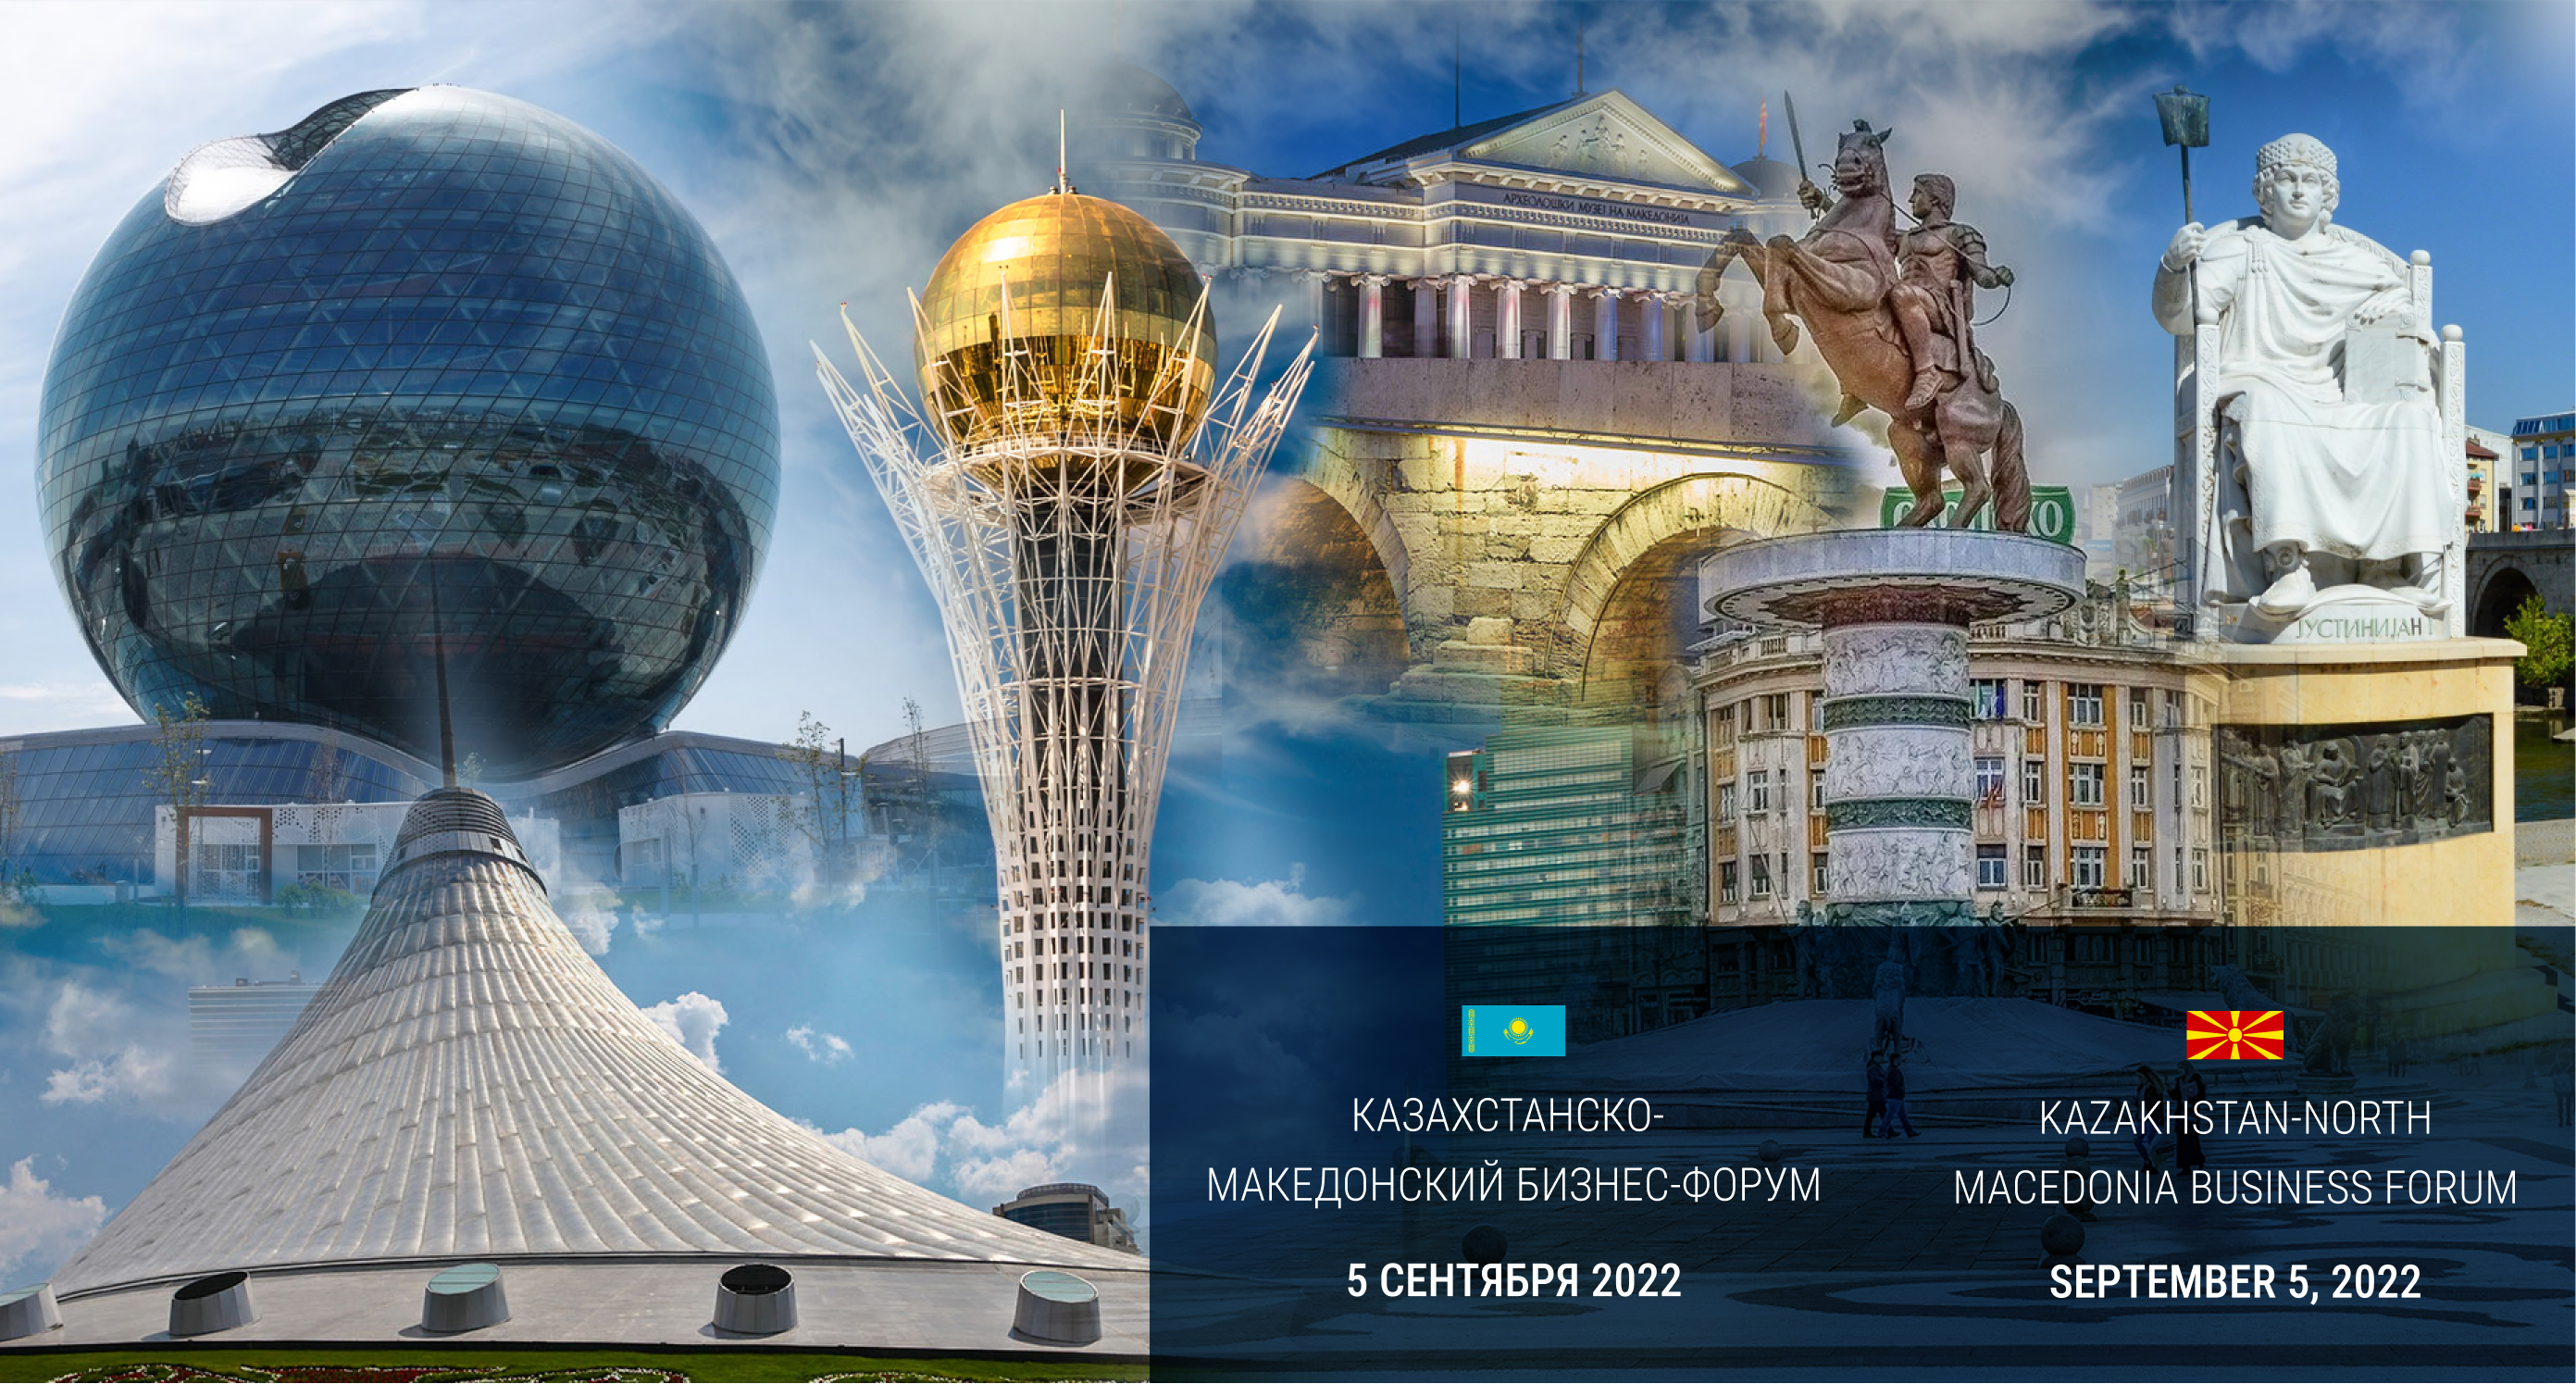 Казахстанско-Македонский бизнес-форум